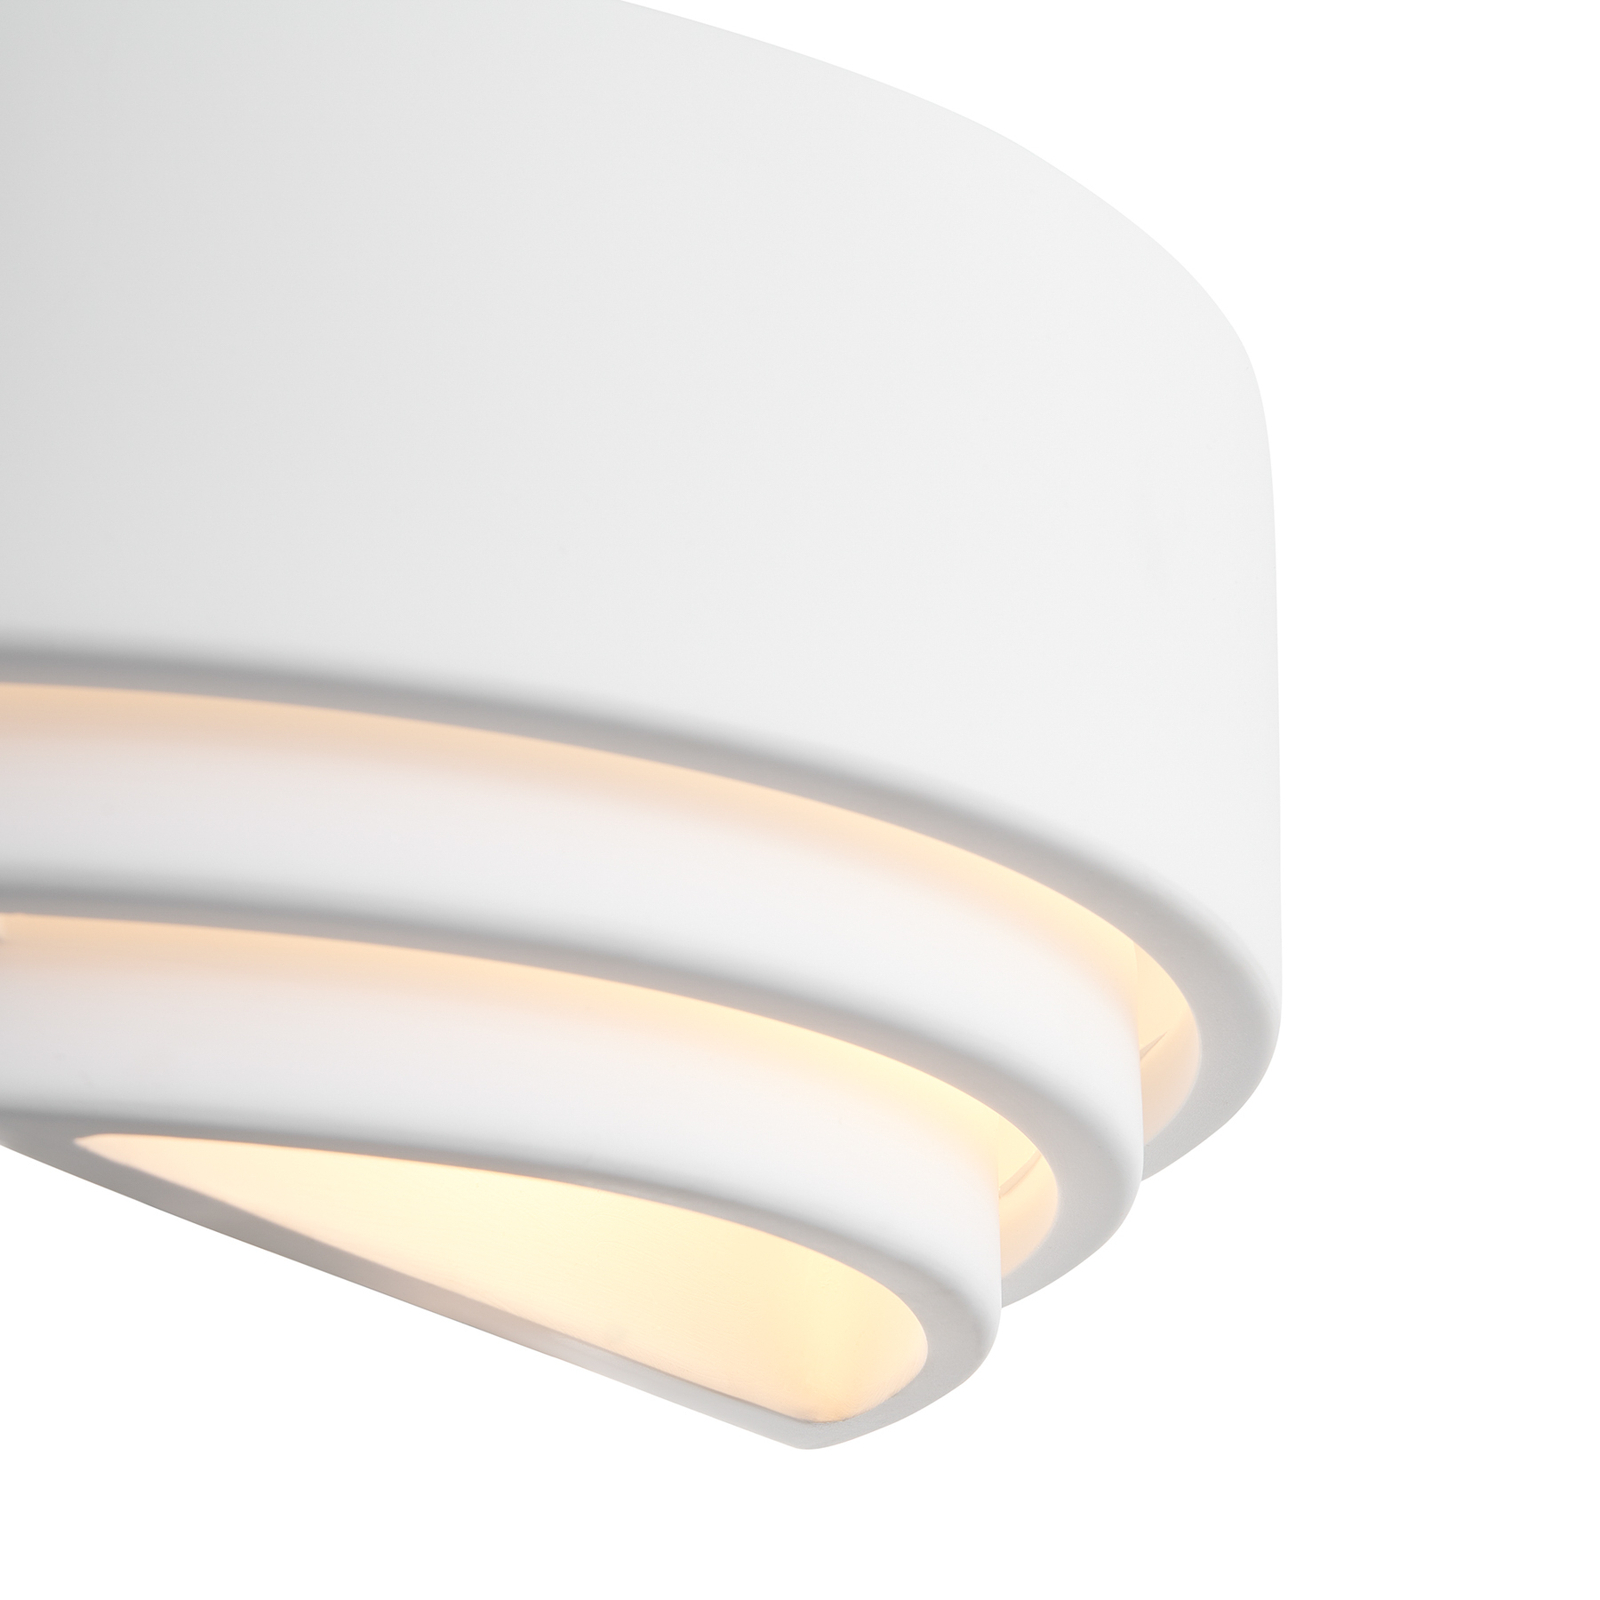 Lancio hosszúkás fali lámpa gipszből, dugóval, fehér színben